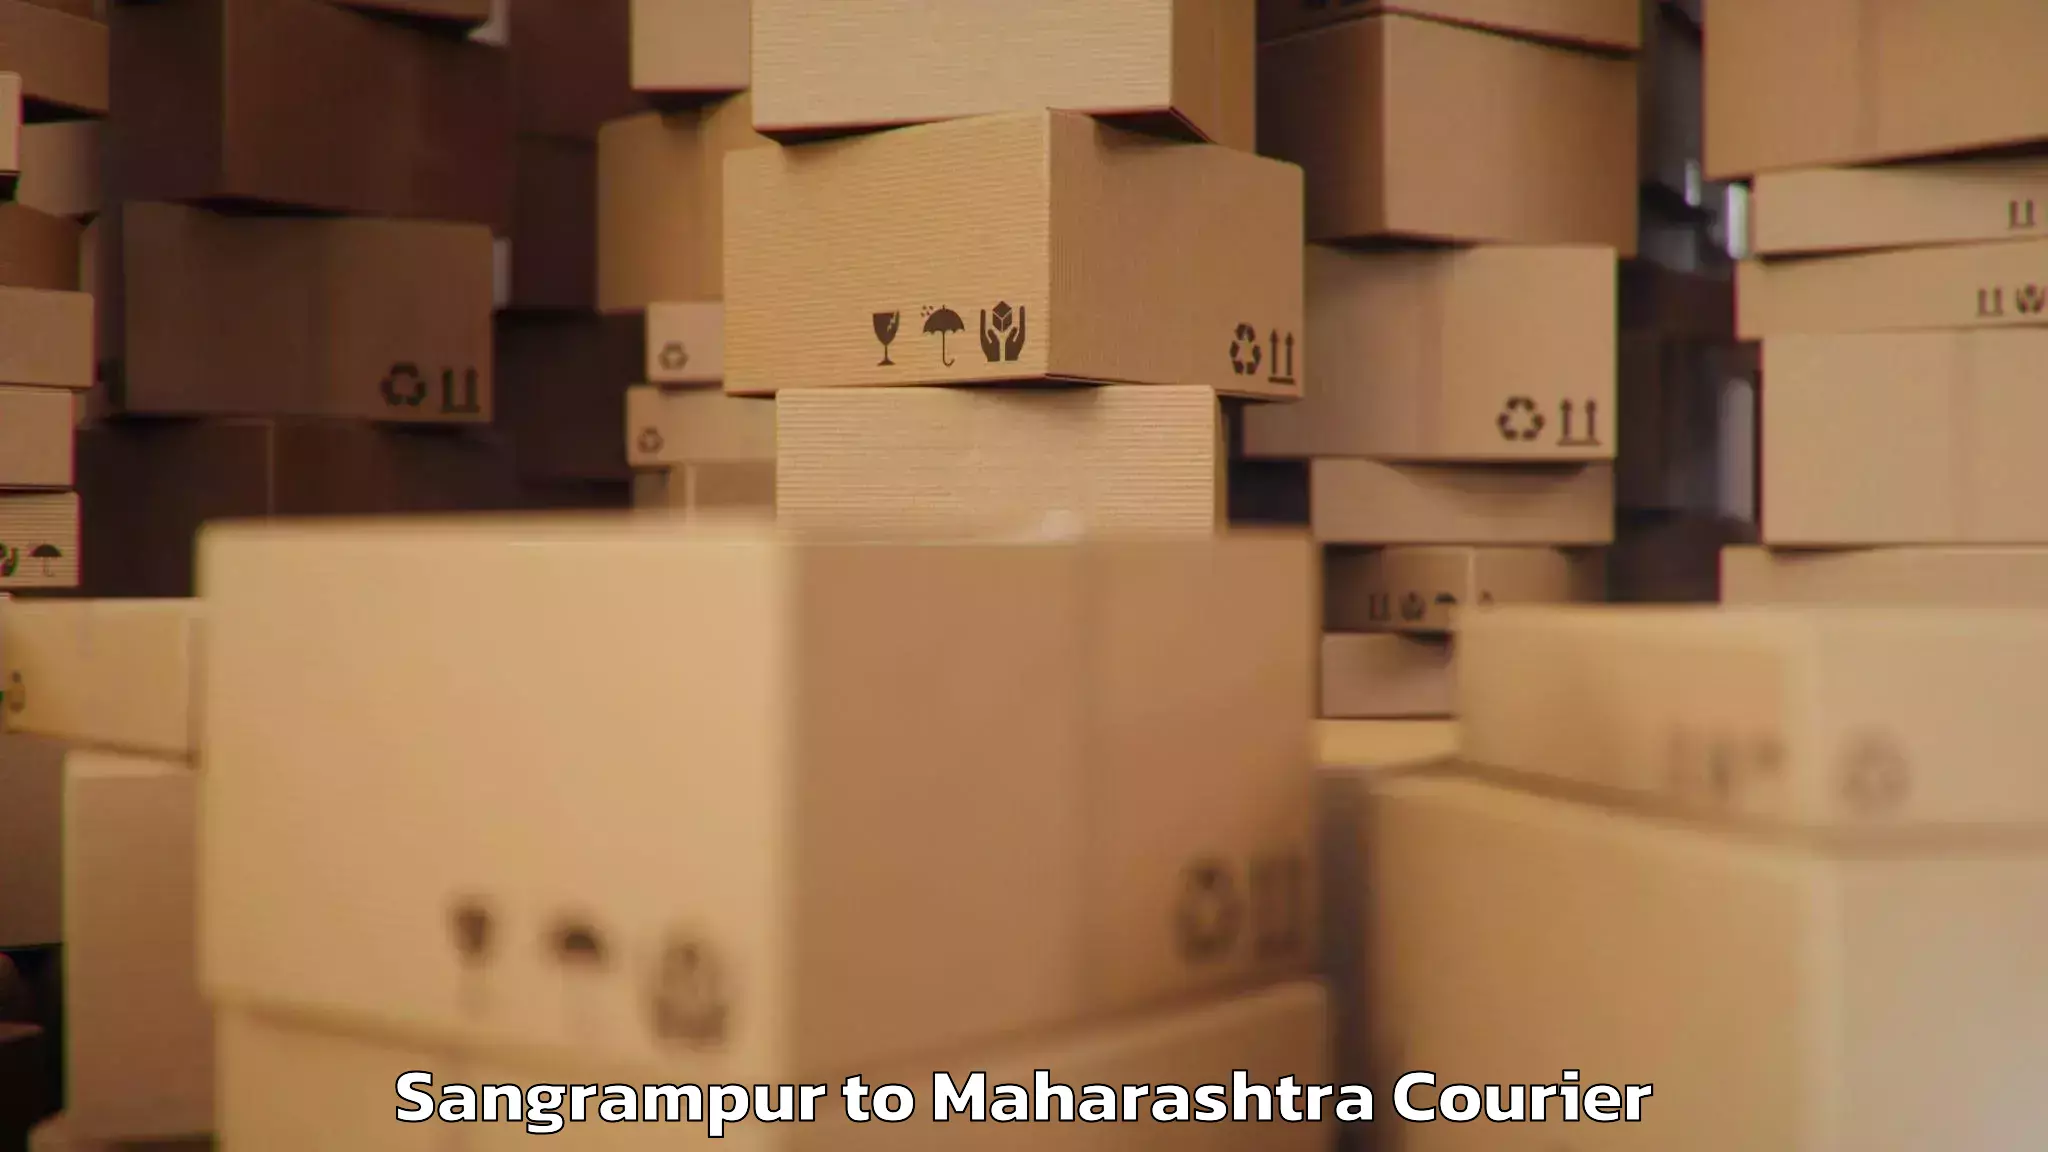 Baggage shipping schedule Sangrampur to Satana